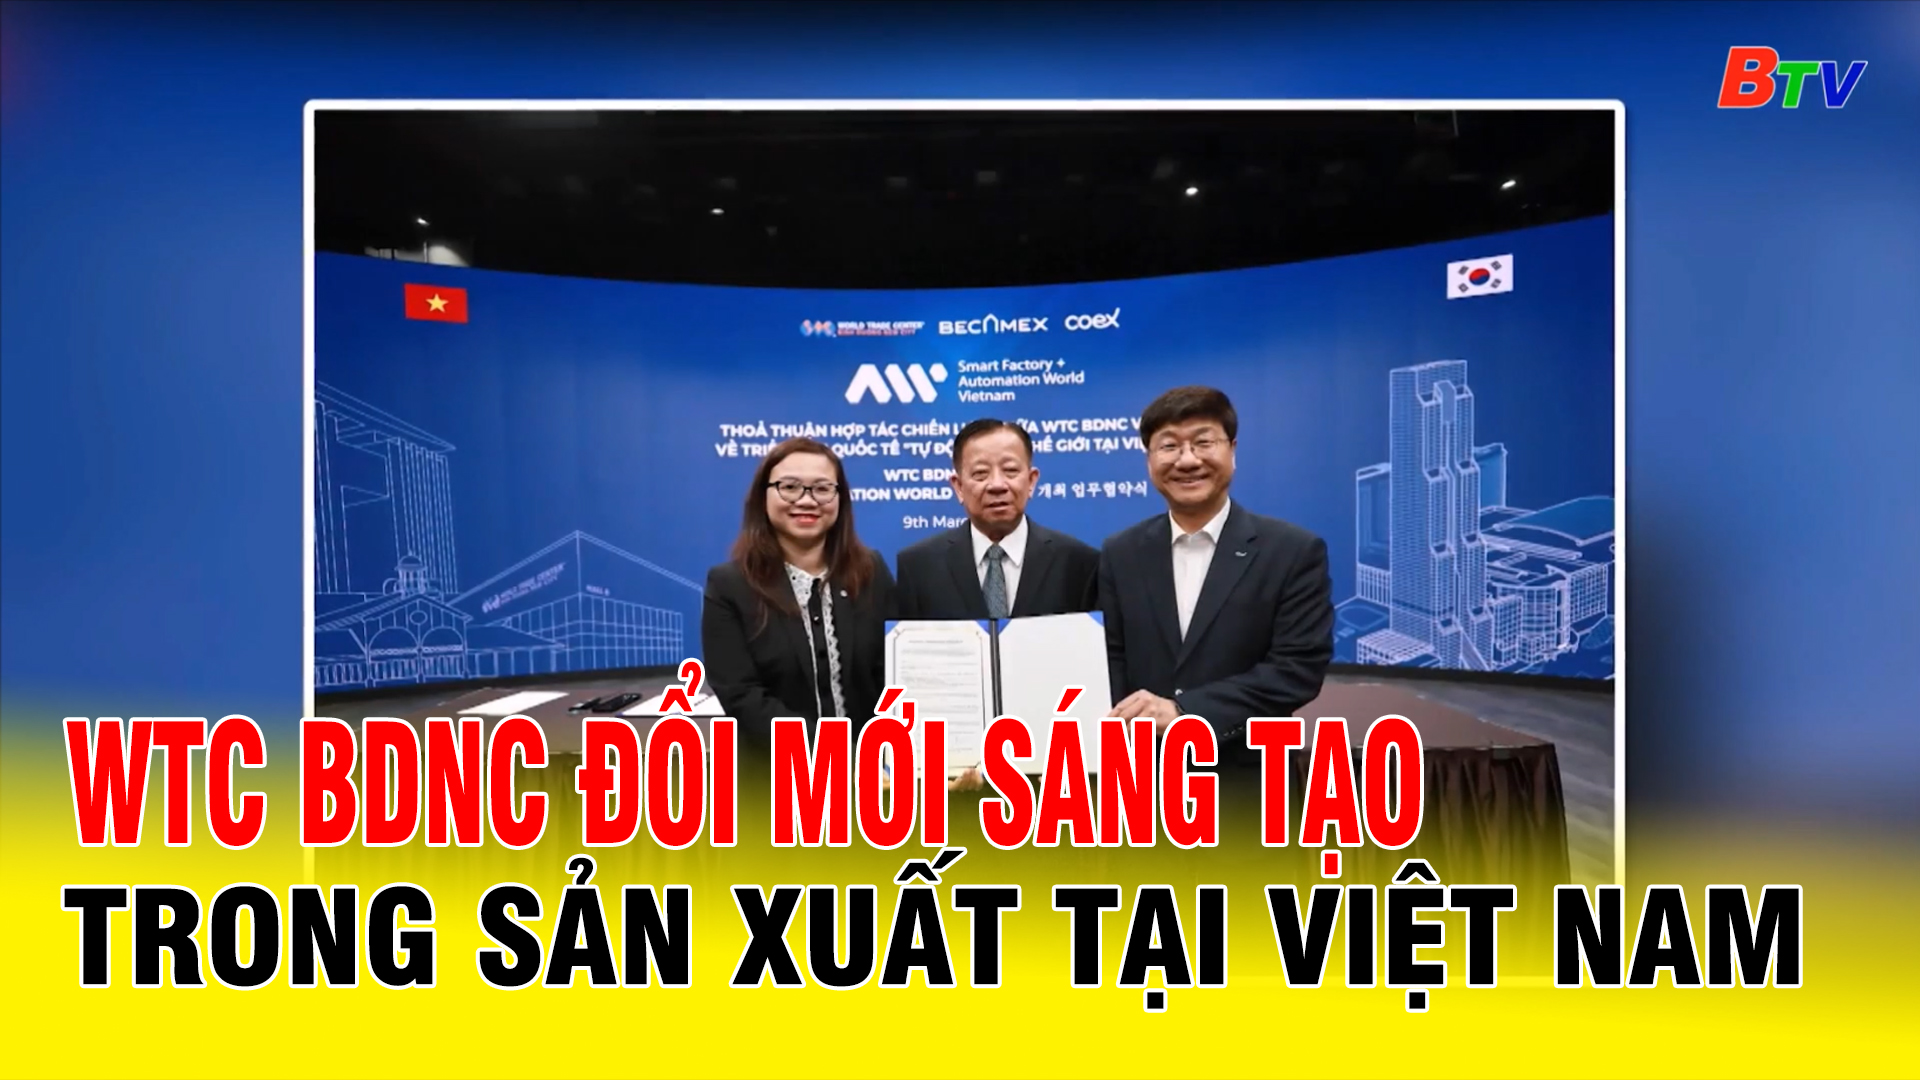 WTC BDNC đổi mới sáng tạo trong sản xuất tại Việt Nam